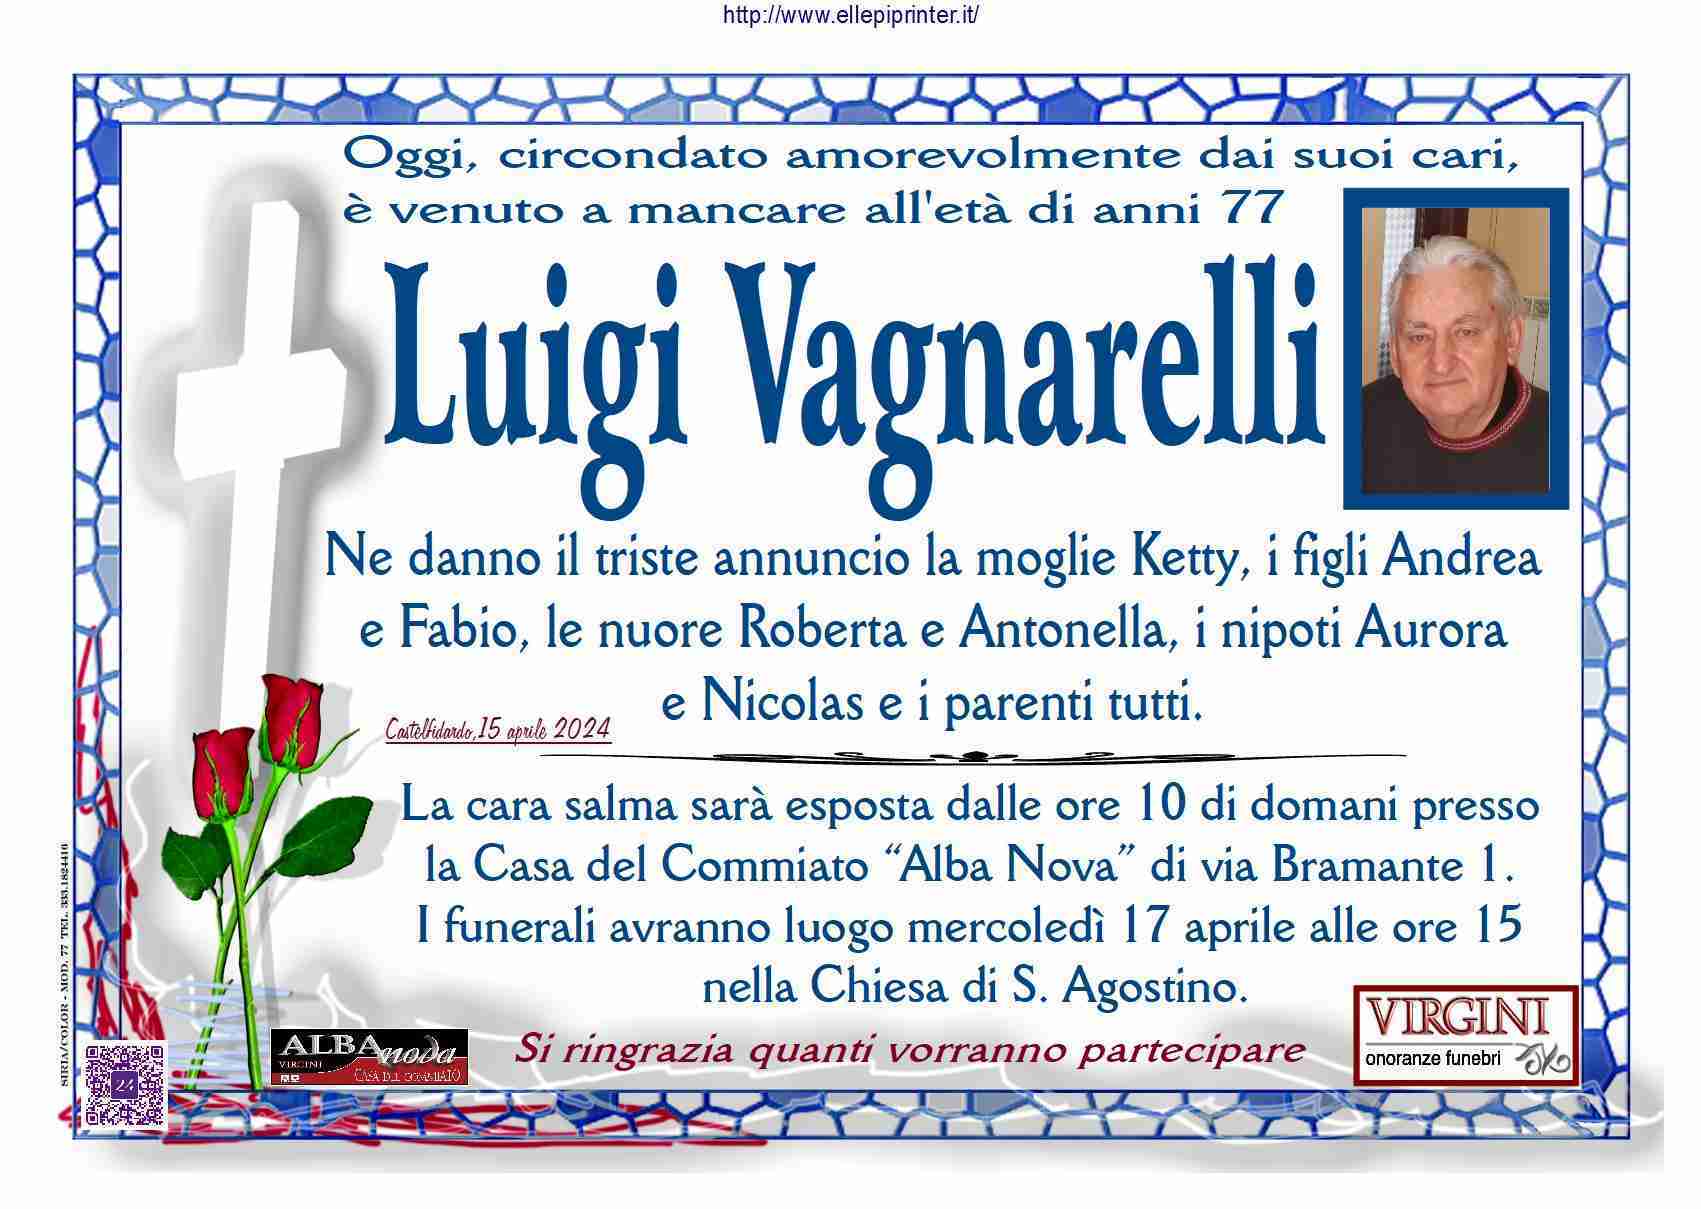 Luigi Vagnarelli